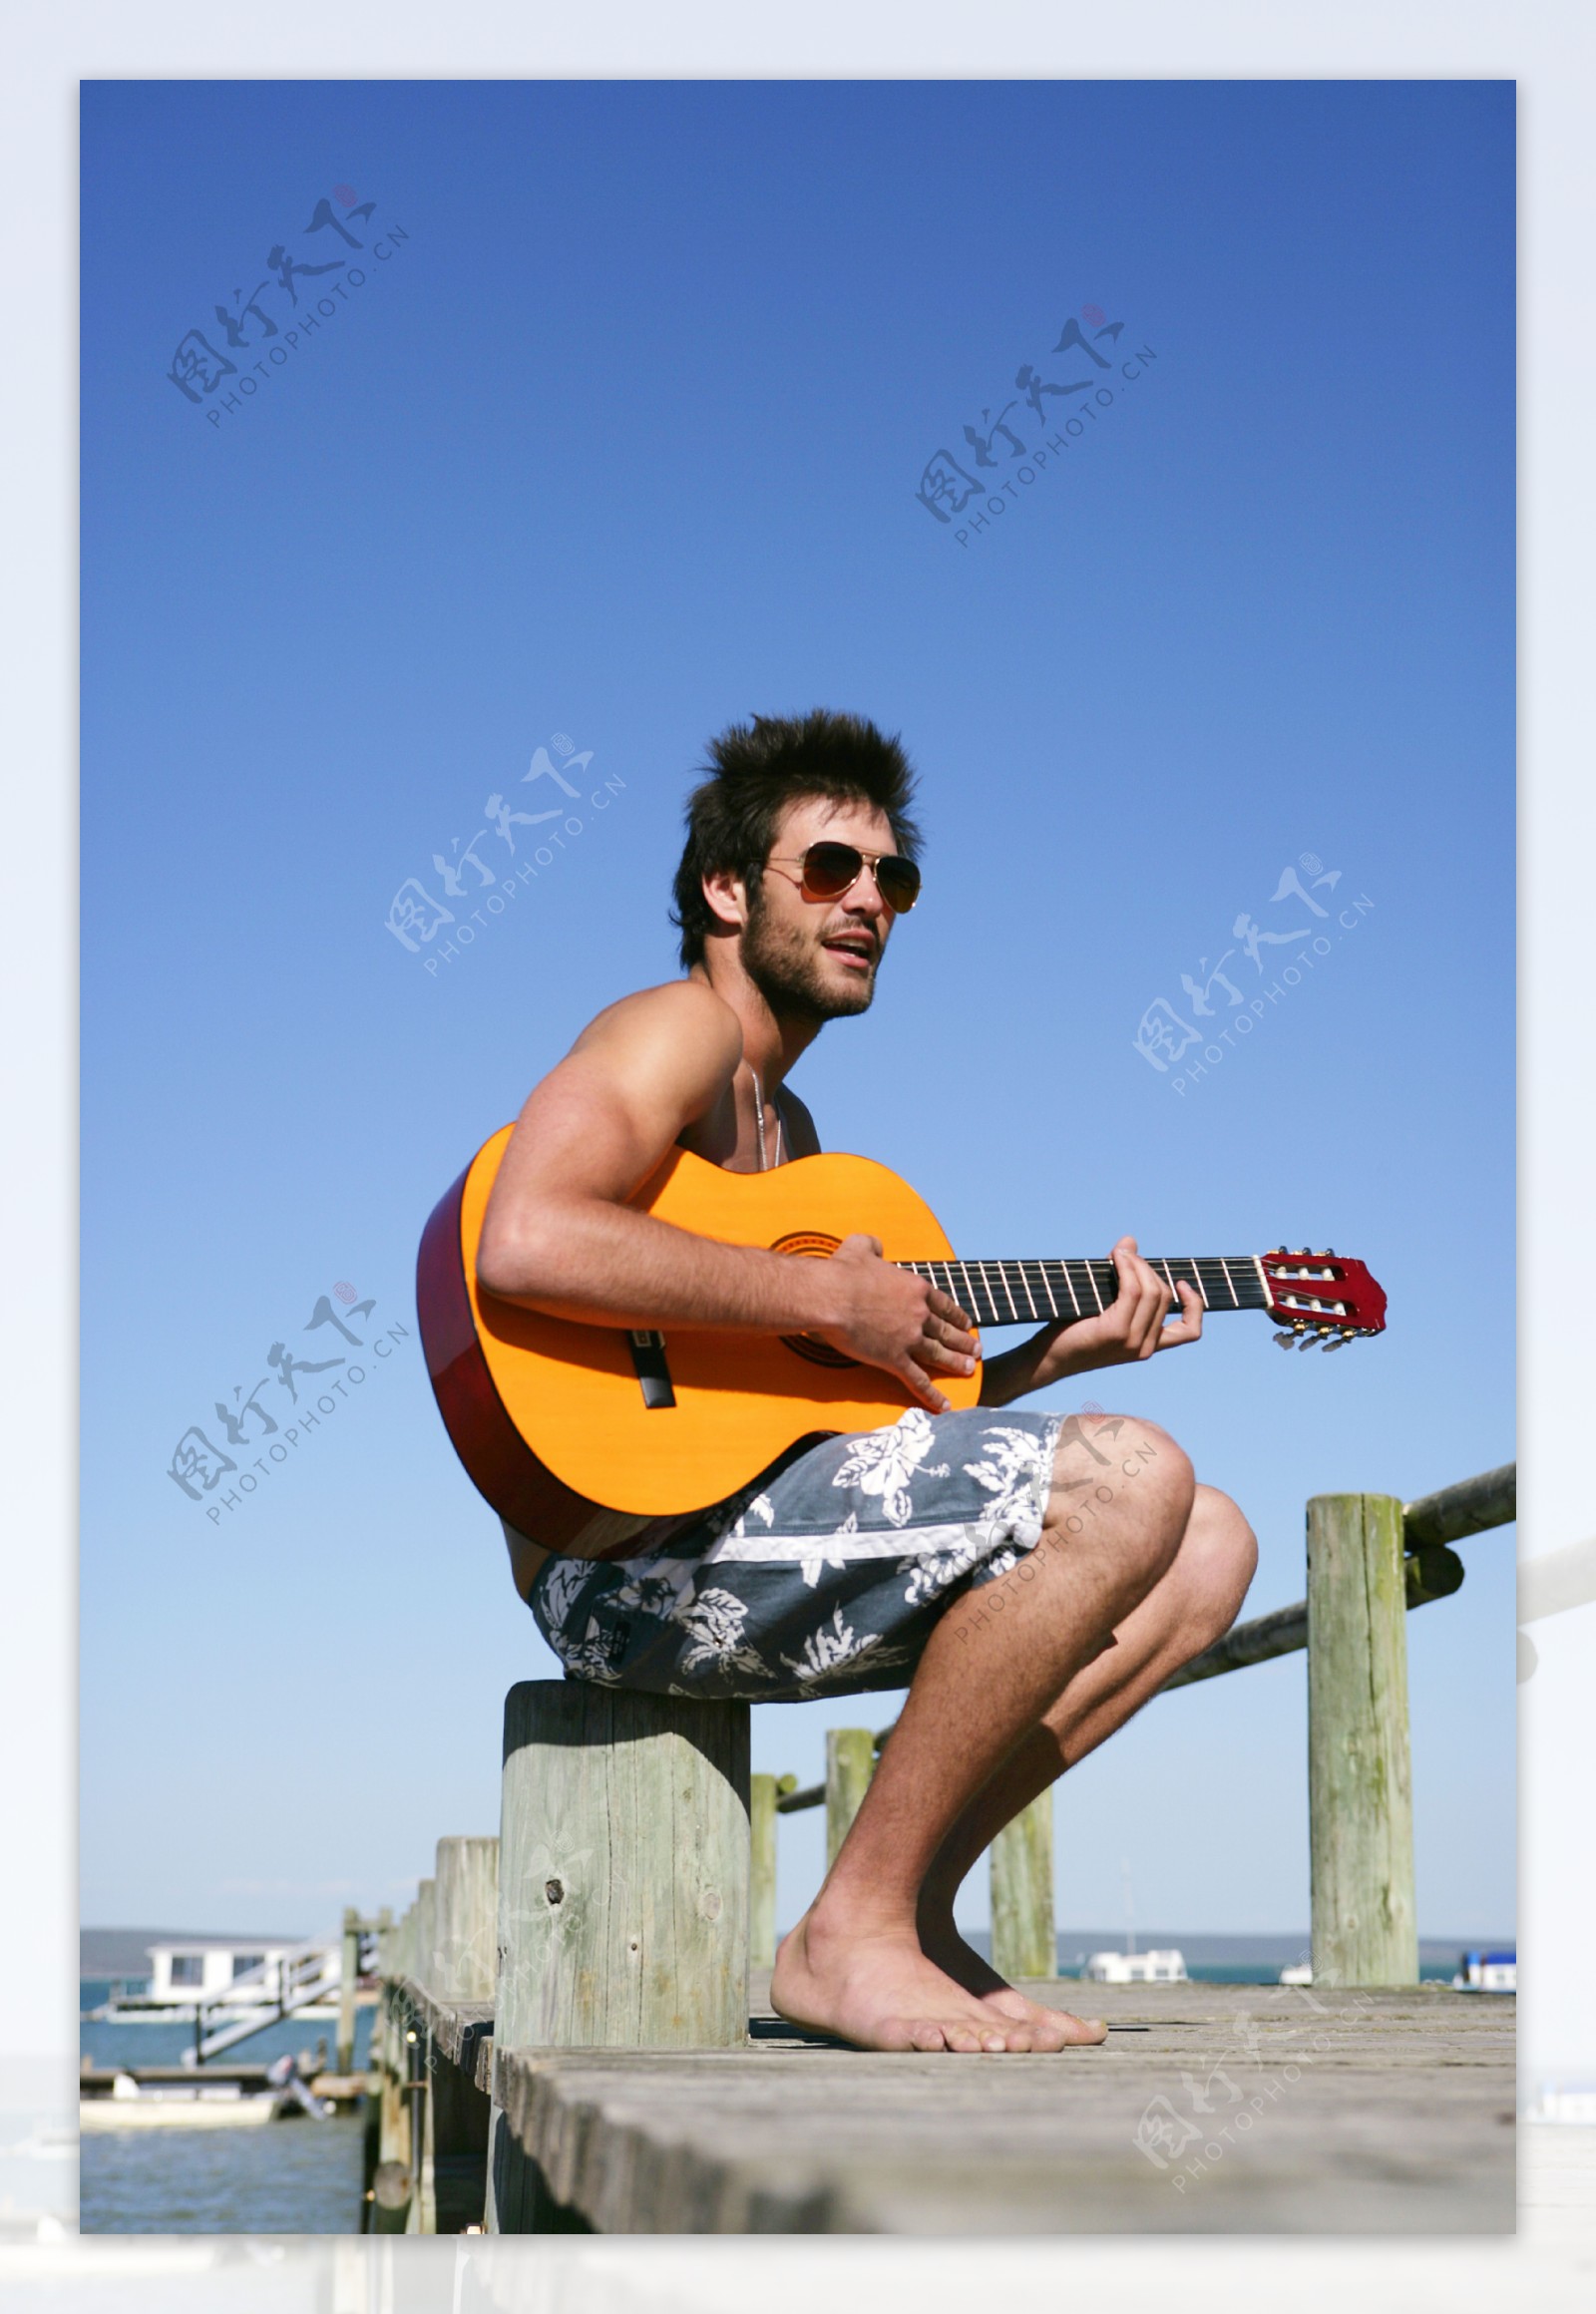 海边玩音乐的帅哥图片